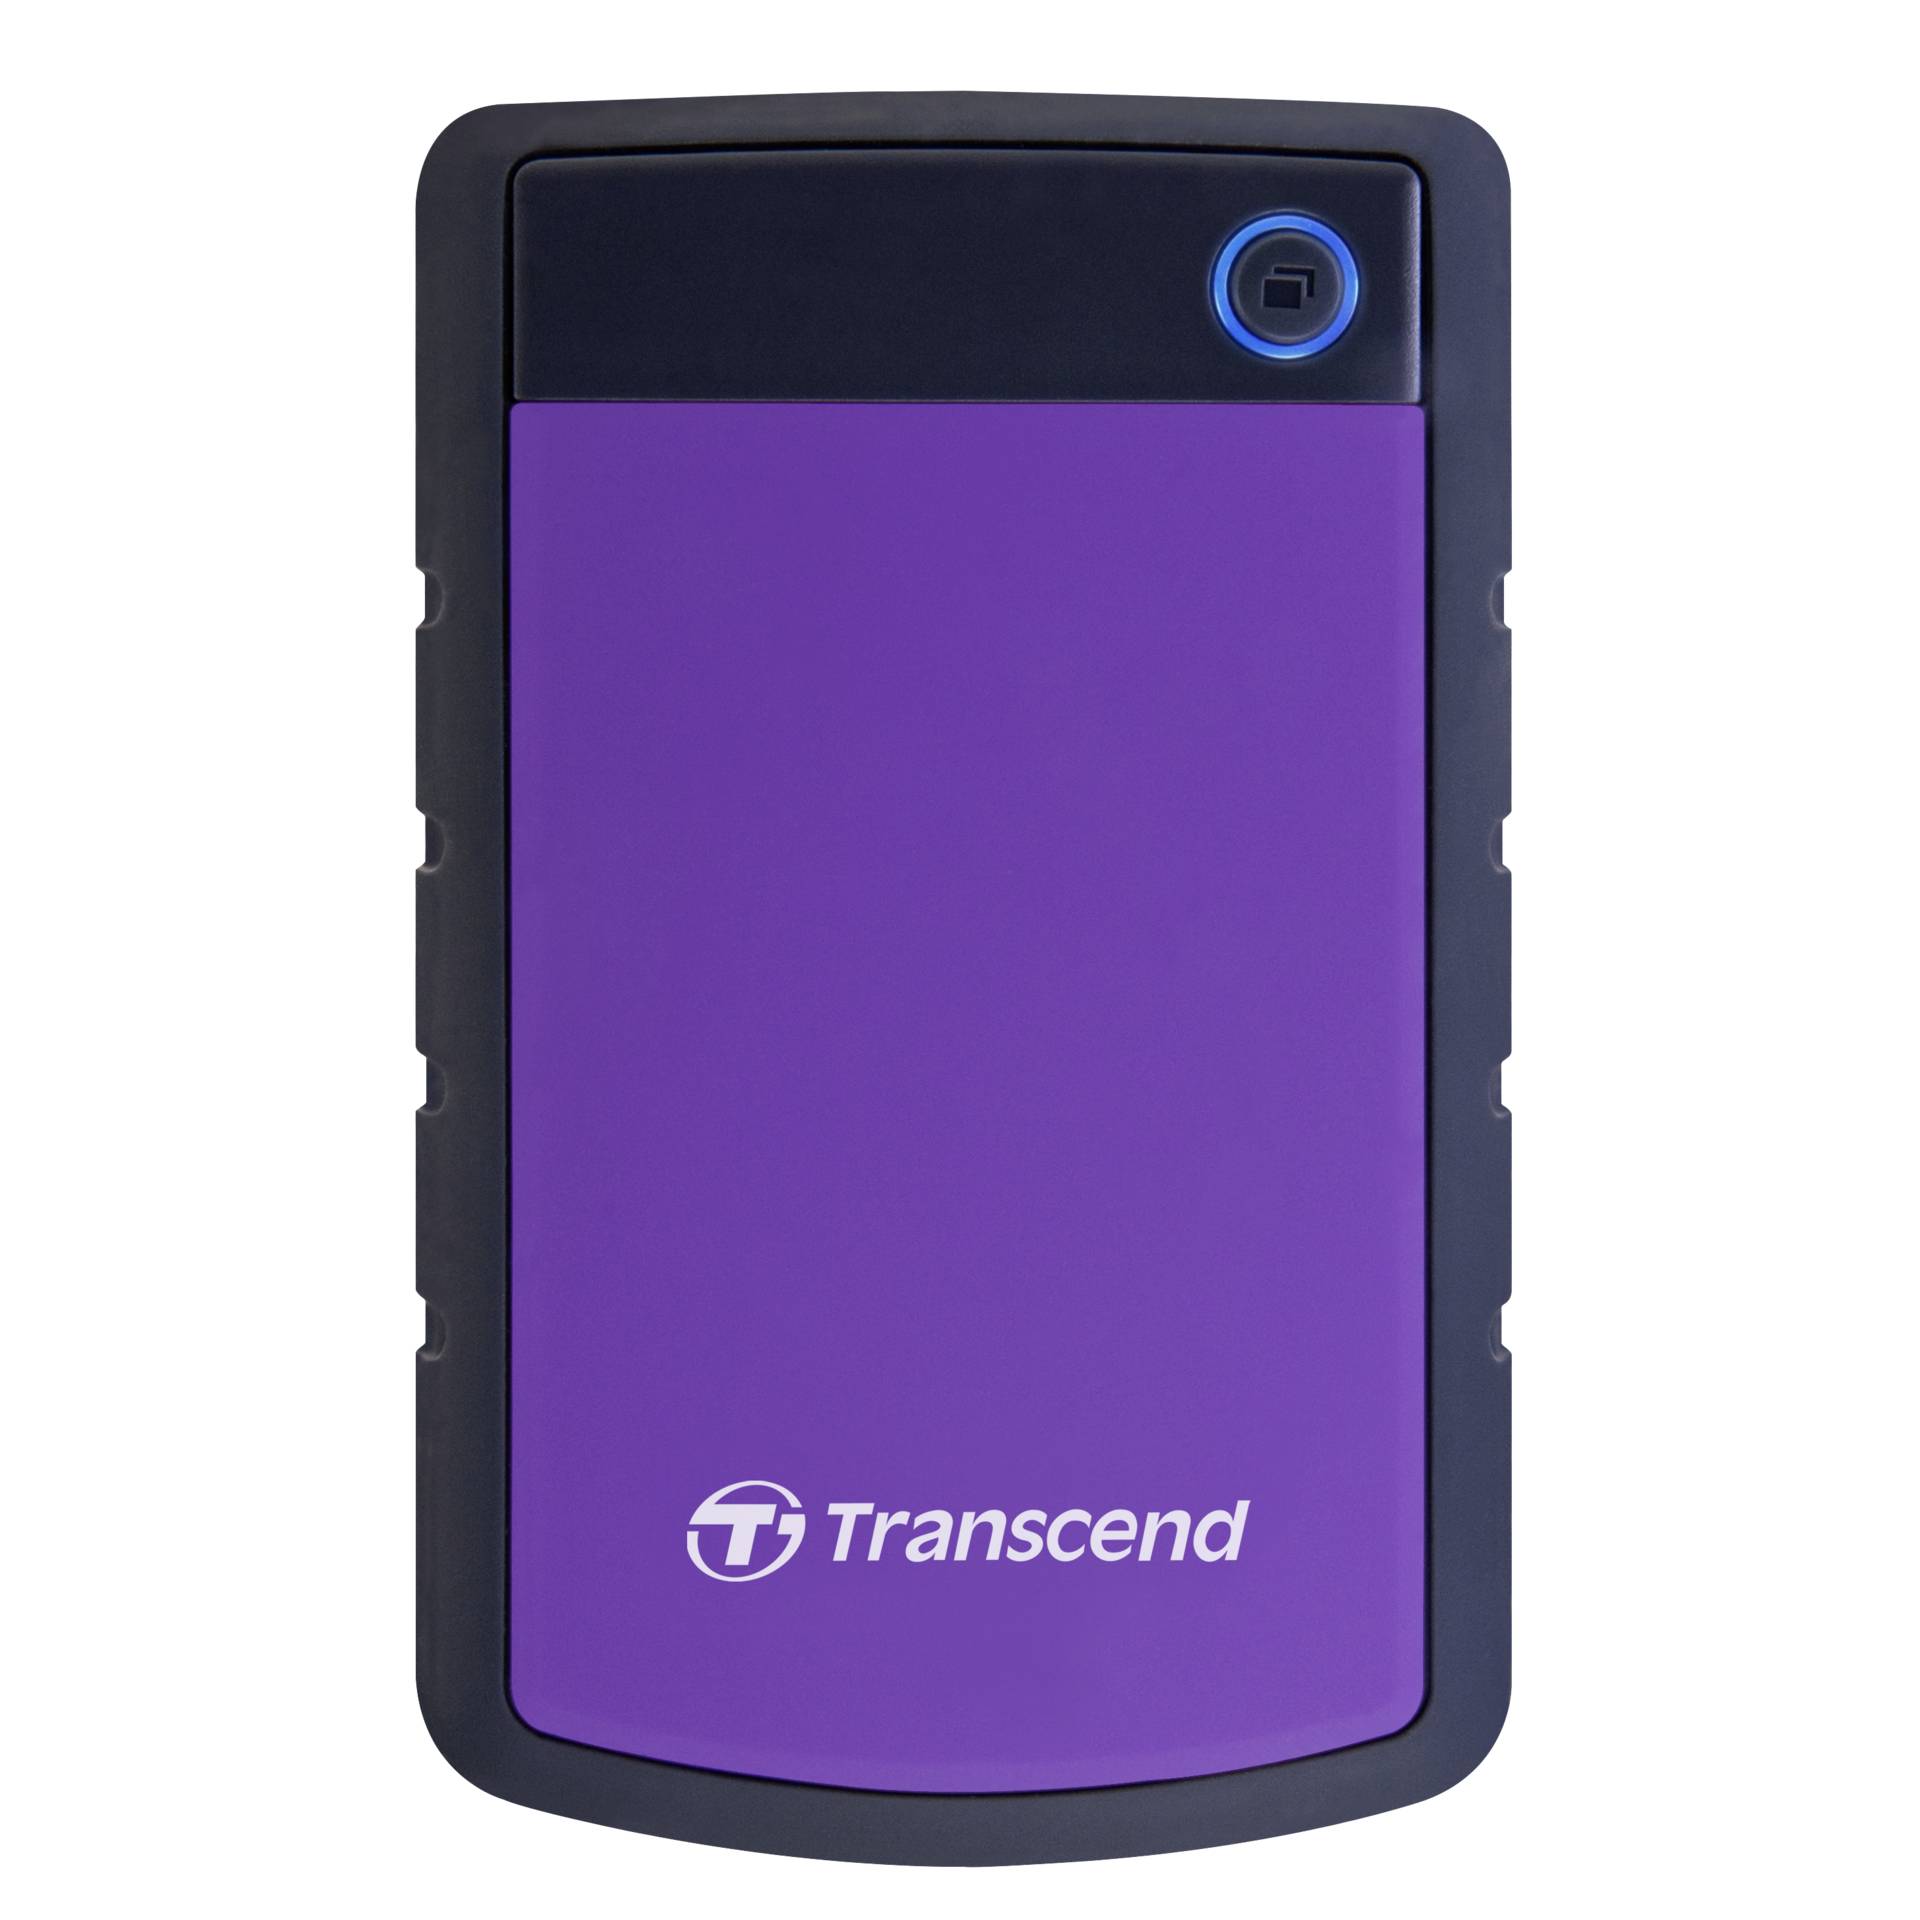 2.0 TB HDD Transcend StoreJet 25H3P violet USB 3.0 